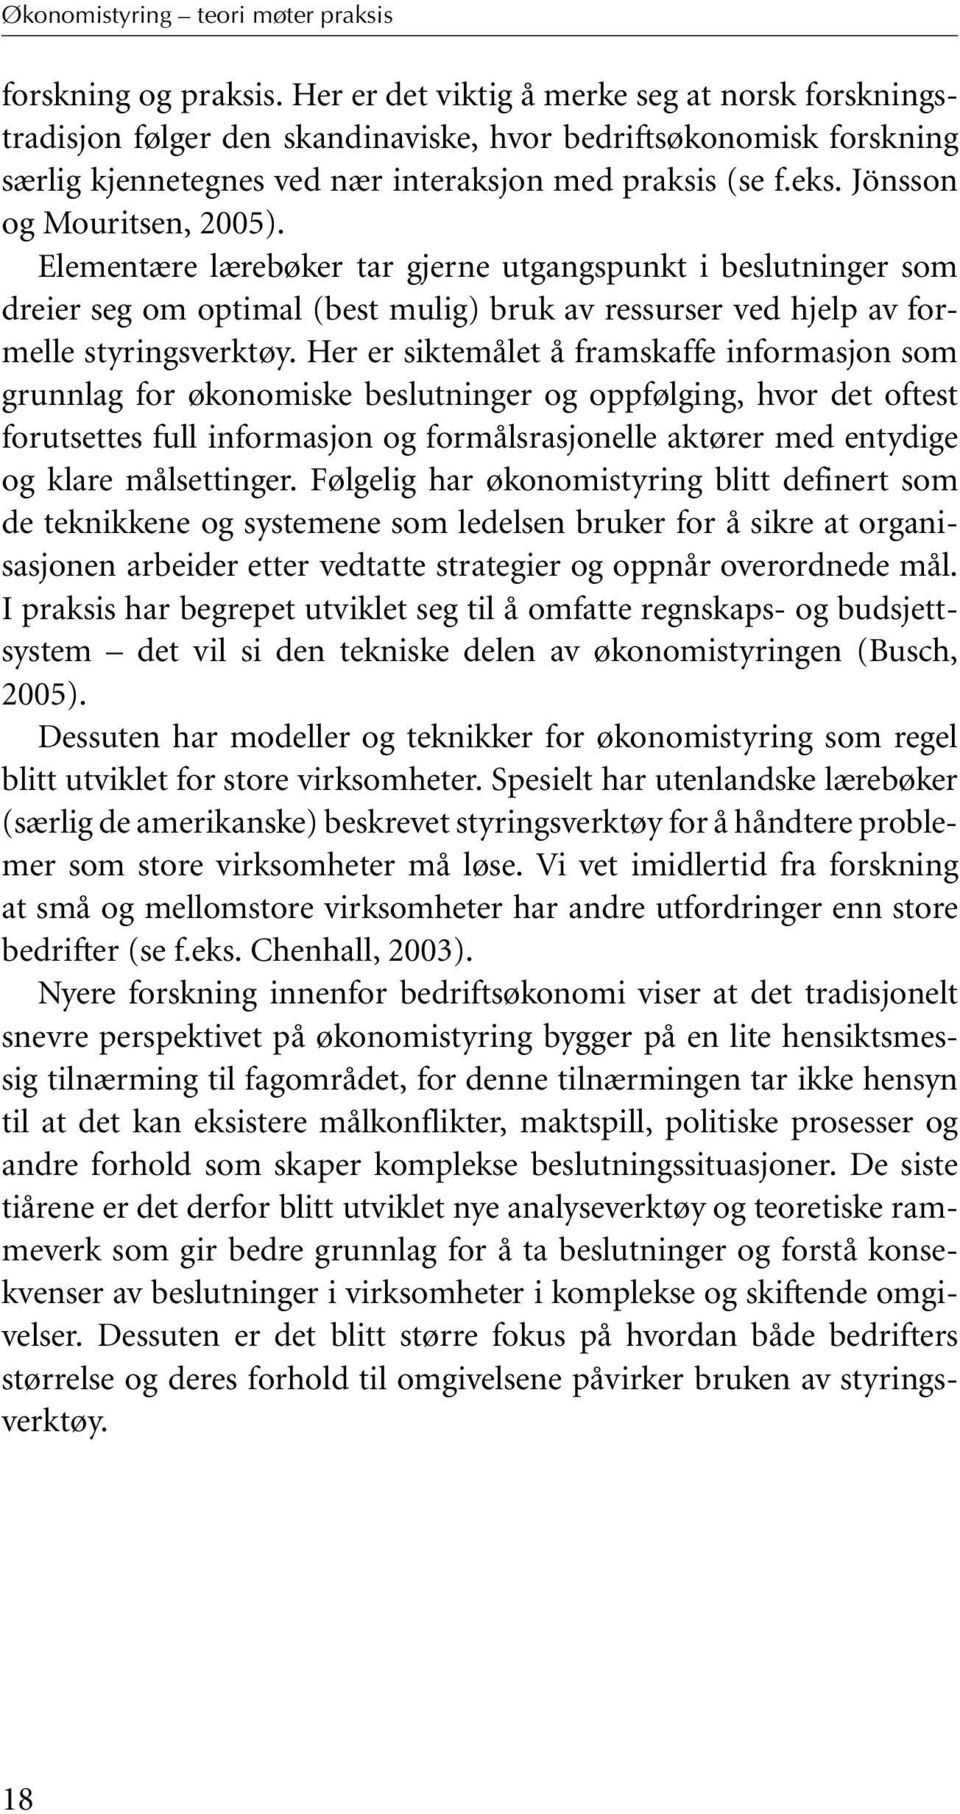 Jönsson og Mouritsen, 2005). Elementære lærebøker tar gjerne utgangspunkt i beslutninger som dreier seg om optimal (best mulig) bruk av ressurser ved hjelp av formelle styringsverktøy.